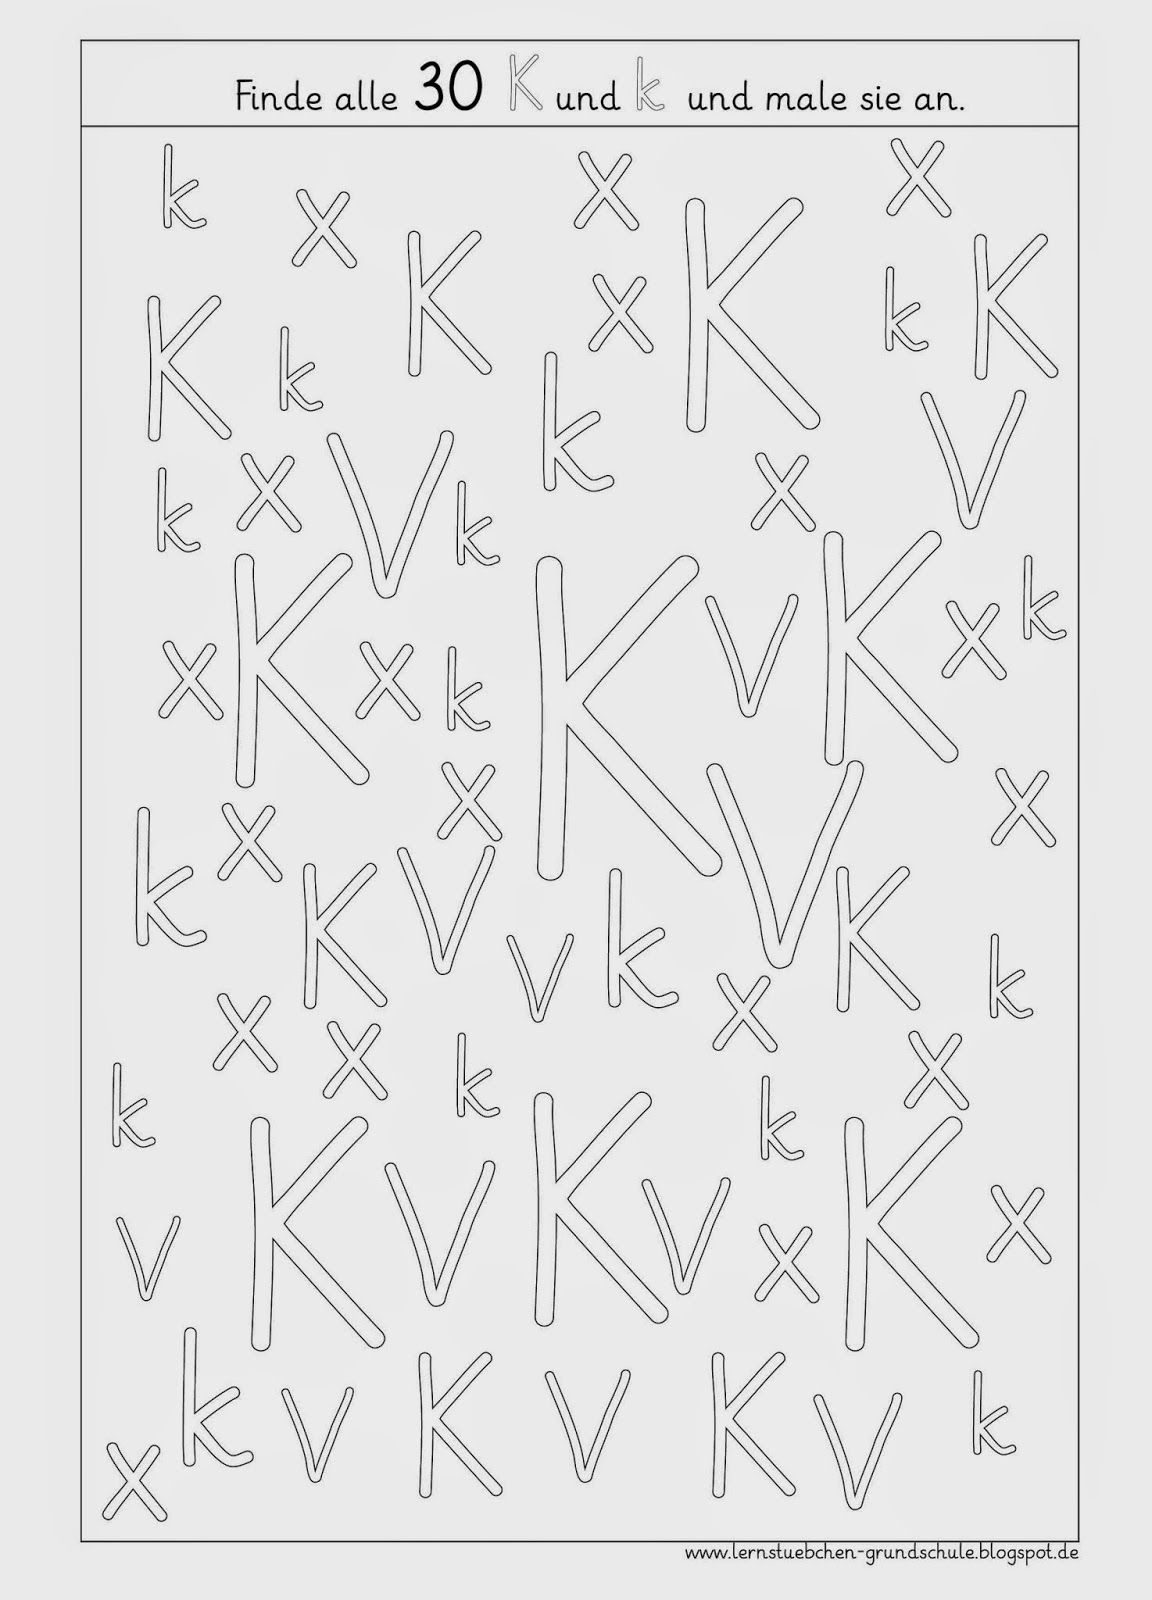 Optische Anayse K - K | Grundschule, Druckschrift mit Buchstabeneinführung K